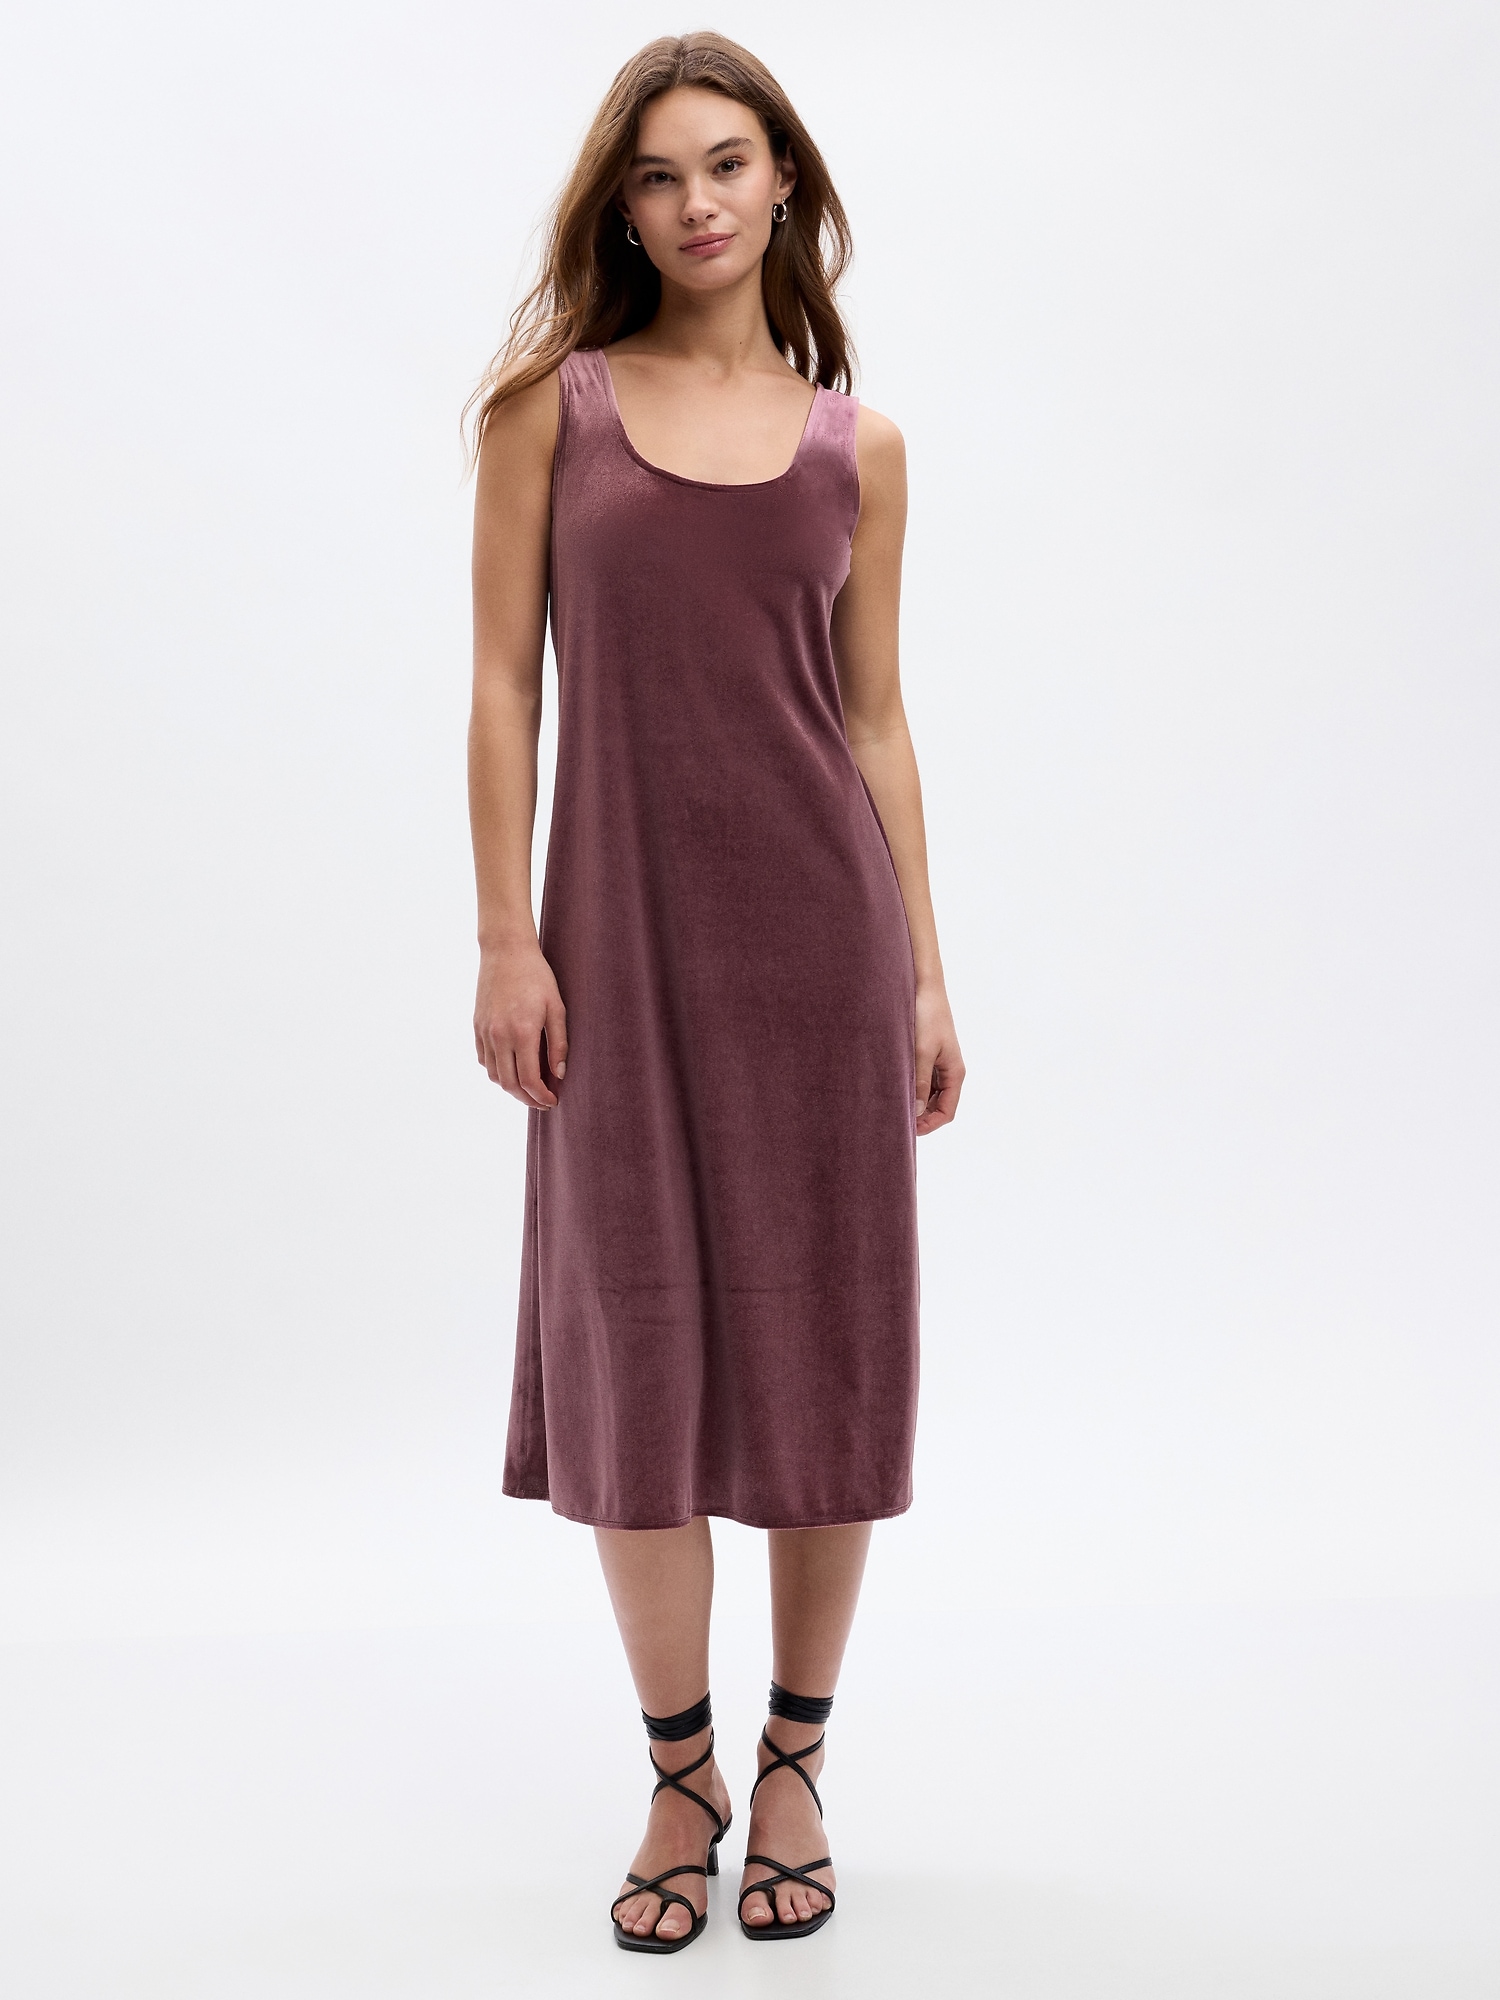 Fitted Velour Slip Midi Dress | Gap Factory